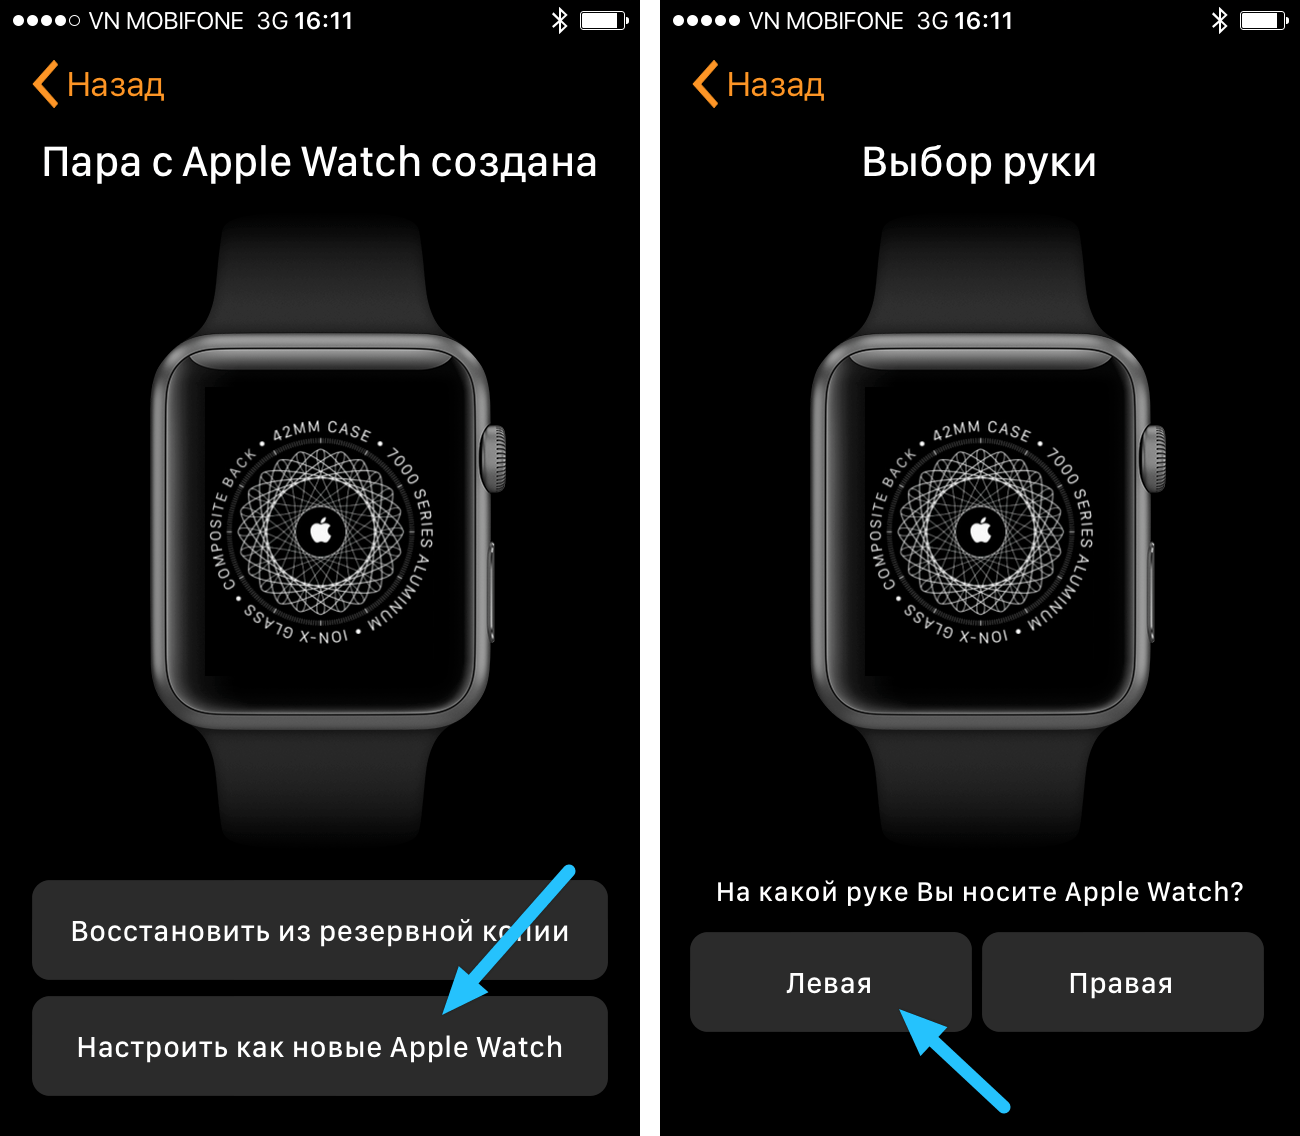 Как синхронизировать apple watch. Как настроить часы Эппл вотч. Как настроить часы на айфоне 5. Экран обновления Эппл вотч. Кнопки на АПЛ вотч 8.